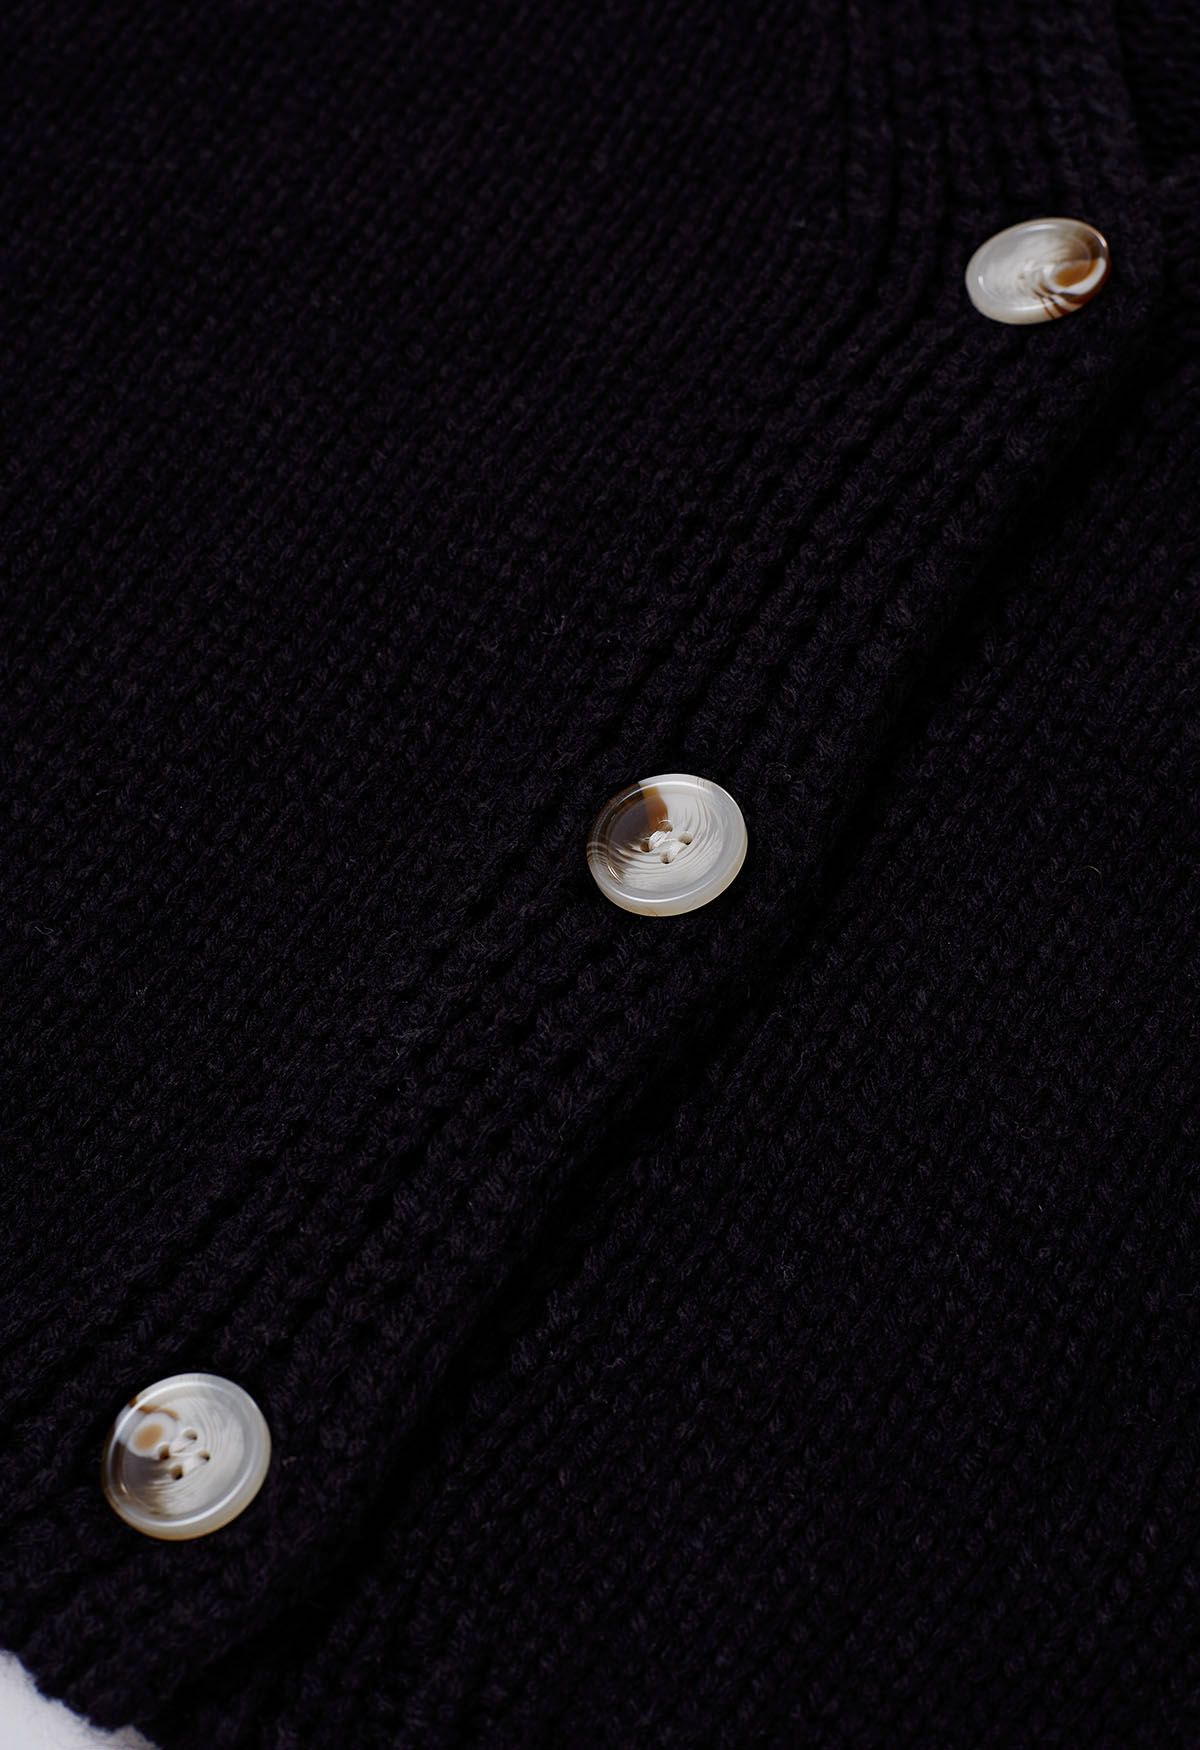 Cardigan en tricot boutonné sur le devant avec patch citrouille